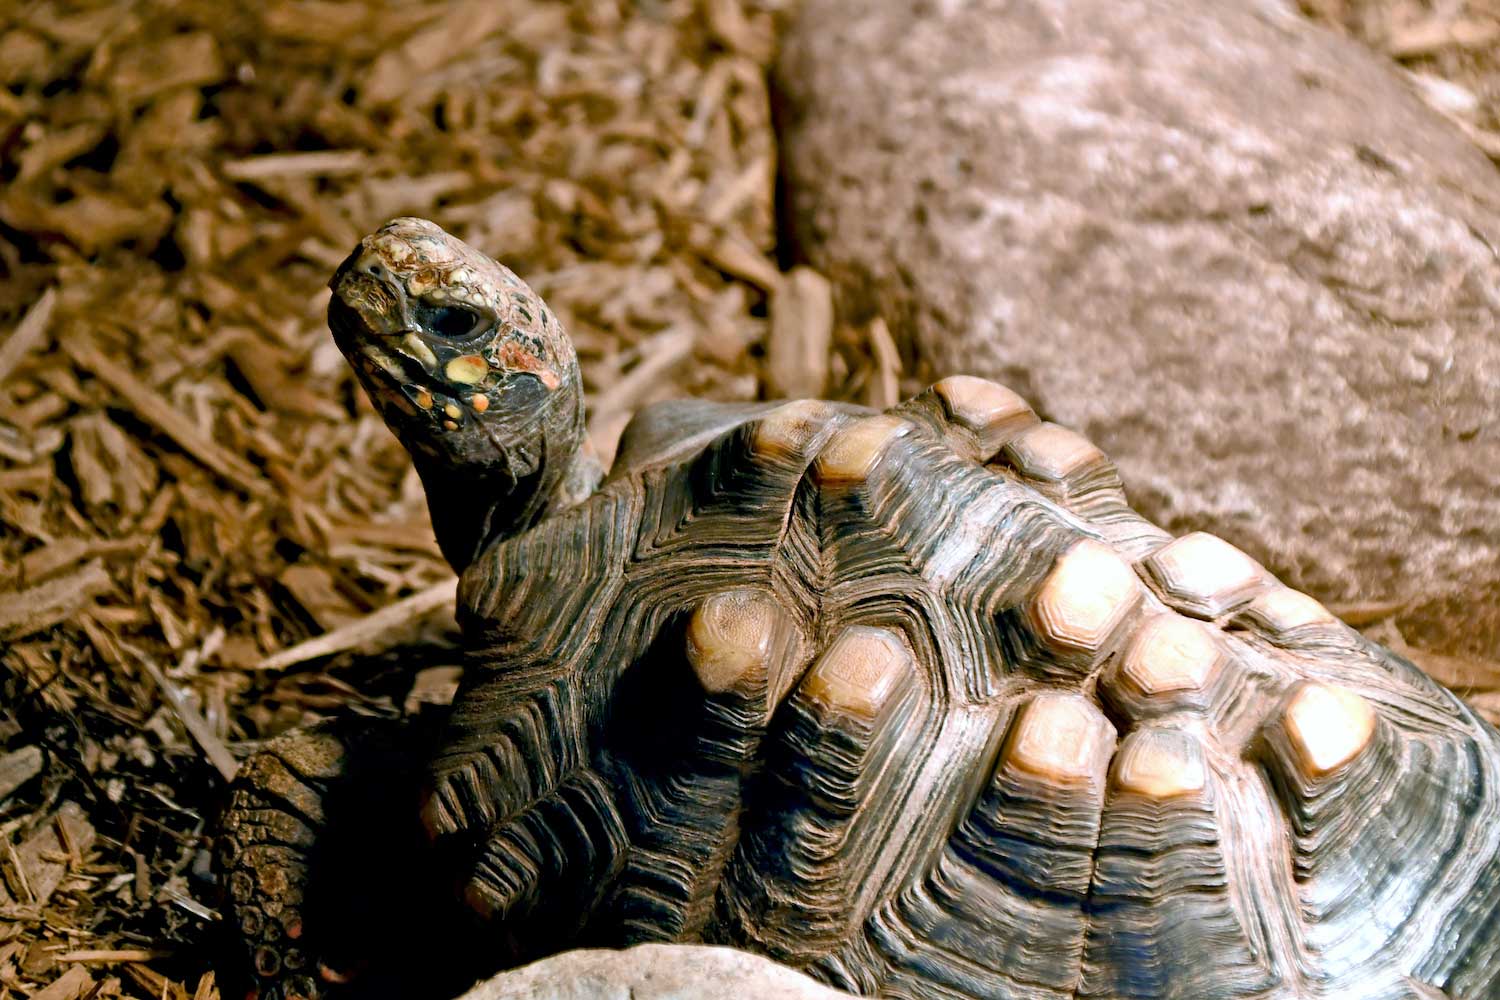 A tortoise in a tank.